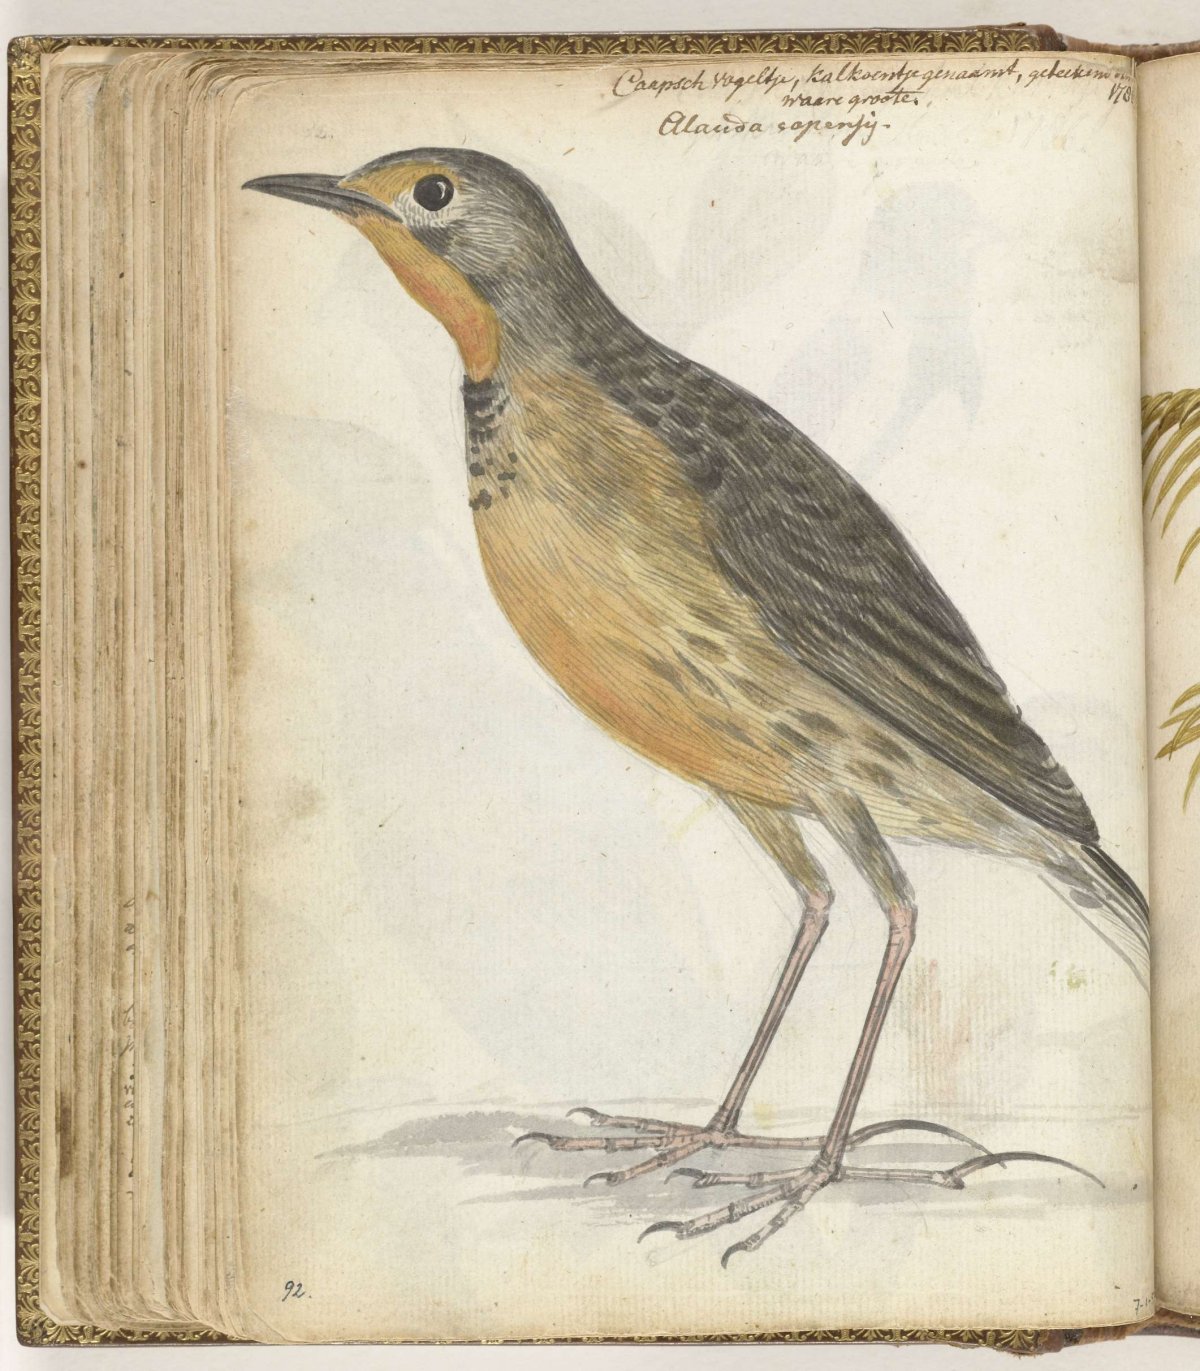 Cape bird, Jan Brandes, 1786